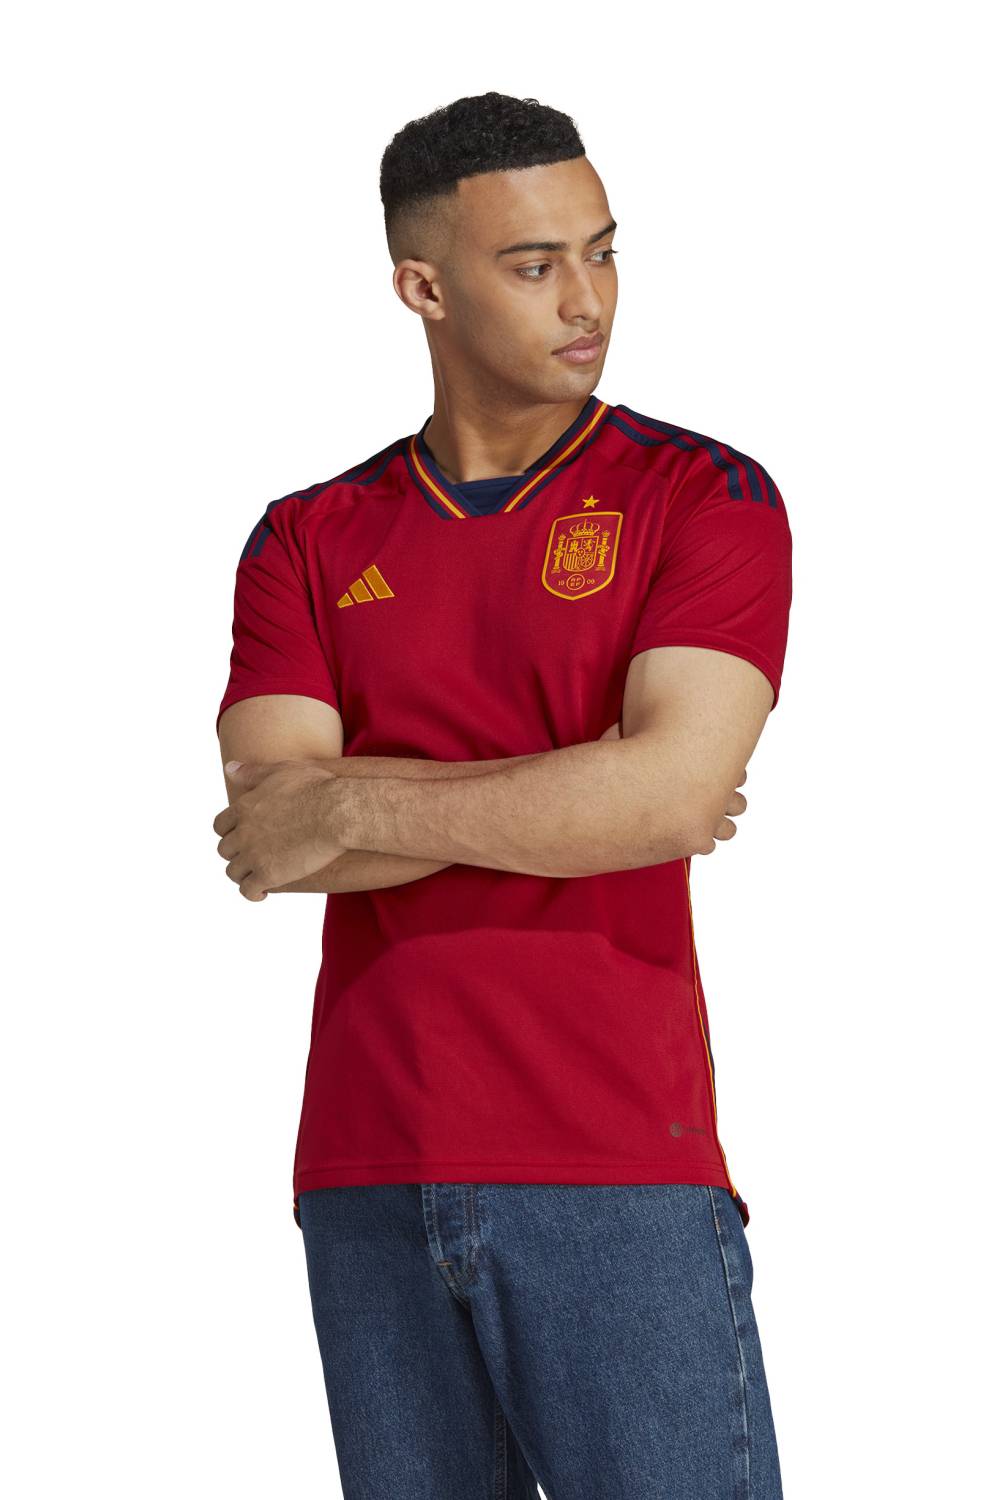 ADIDAS Camiseta De Fútbol España Local Hombre Adidas